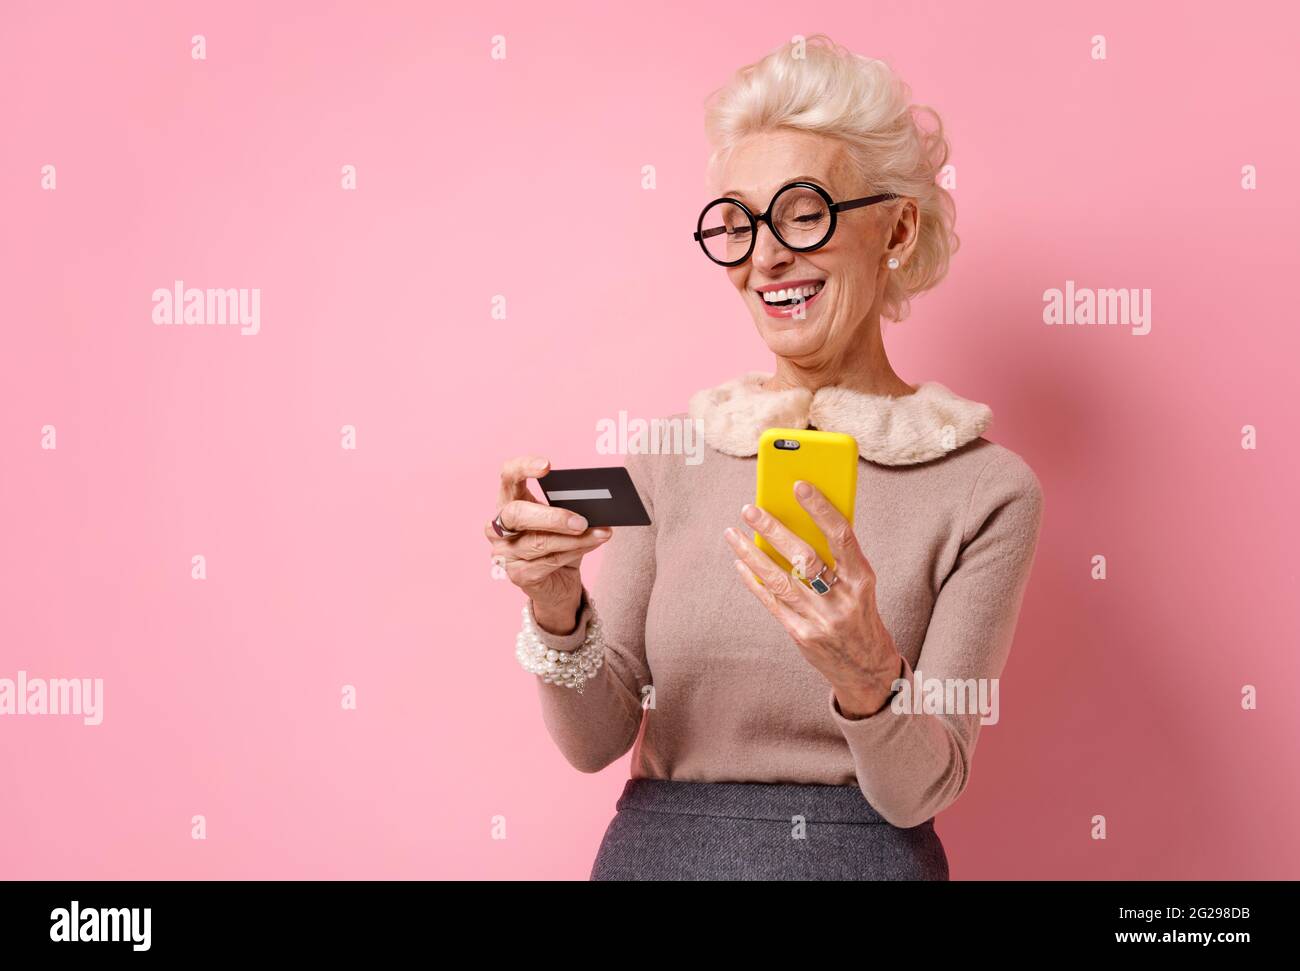 Grand-mère effectue un paiement à l'aide d'une carte de crédit et d'un smartphone. Photo d'une femme âgée sur fond rose. Banque D'Images